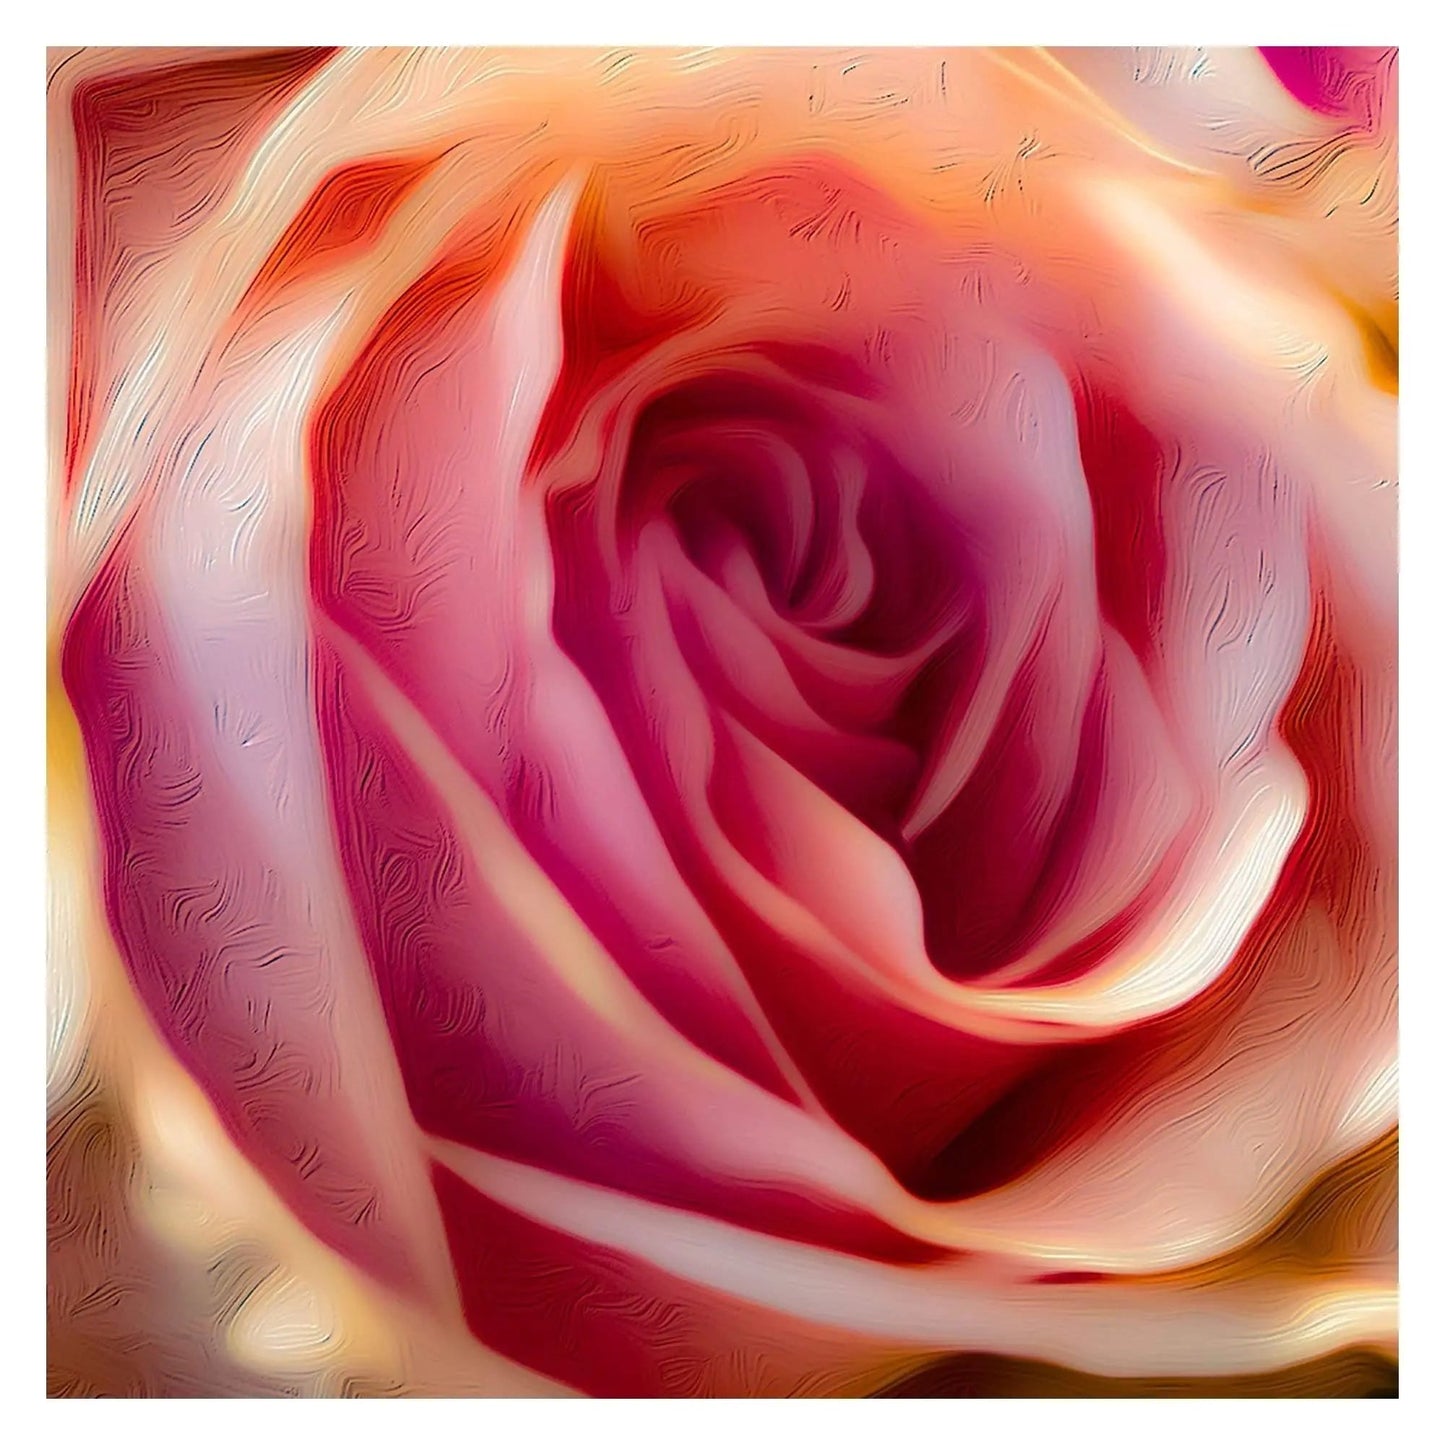 Pink rose art